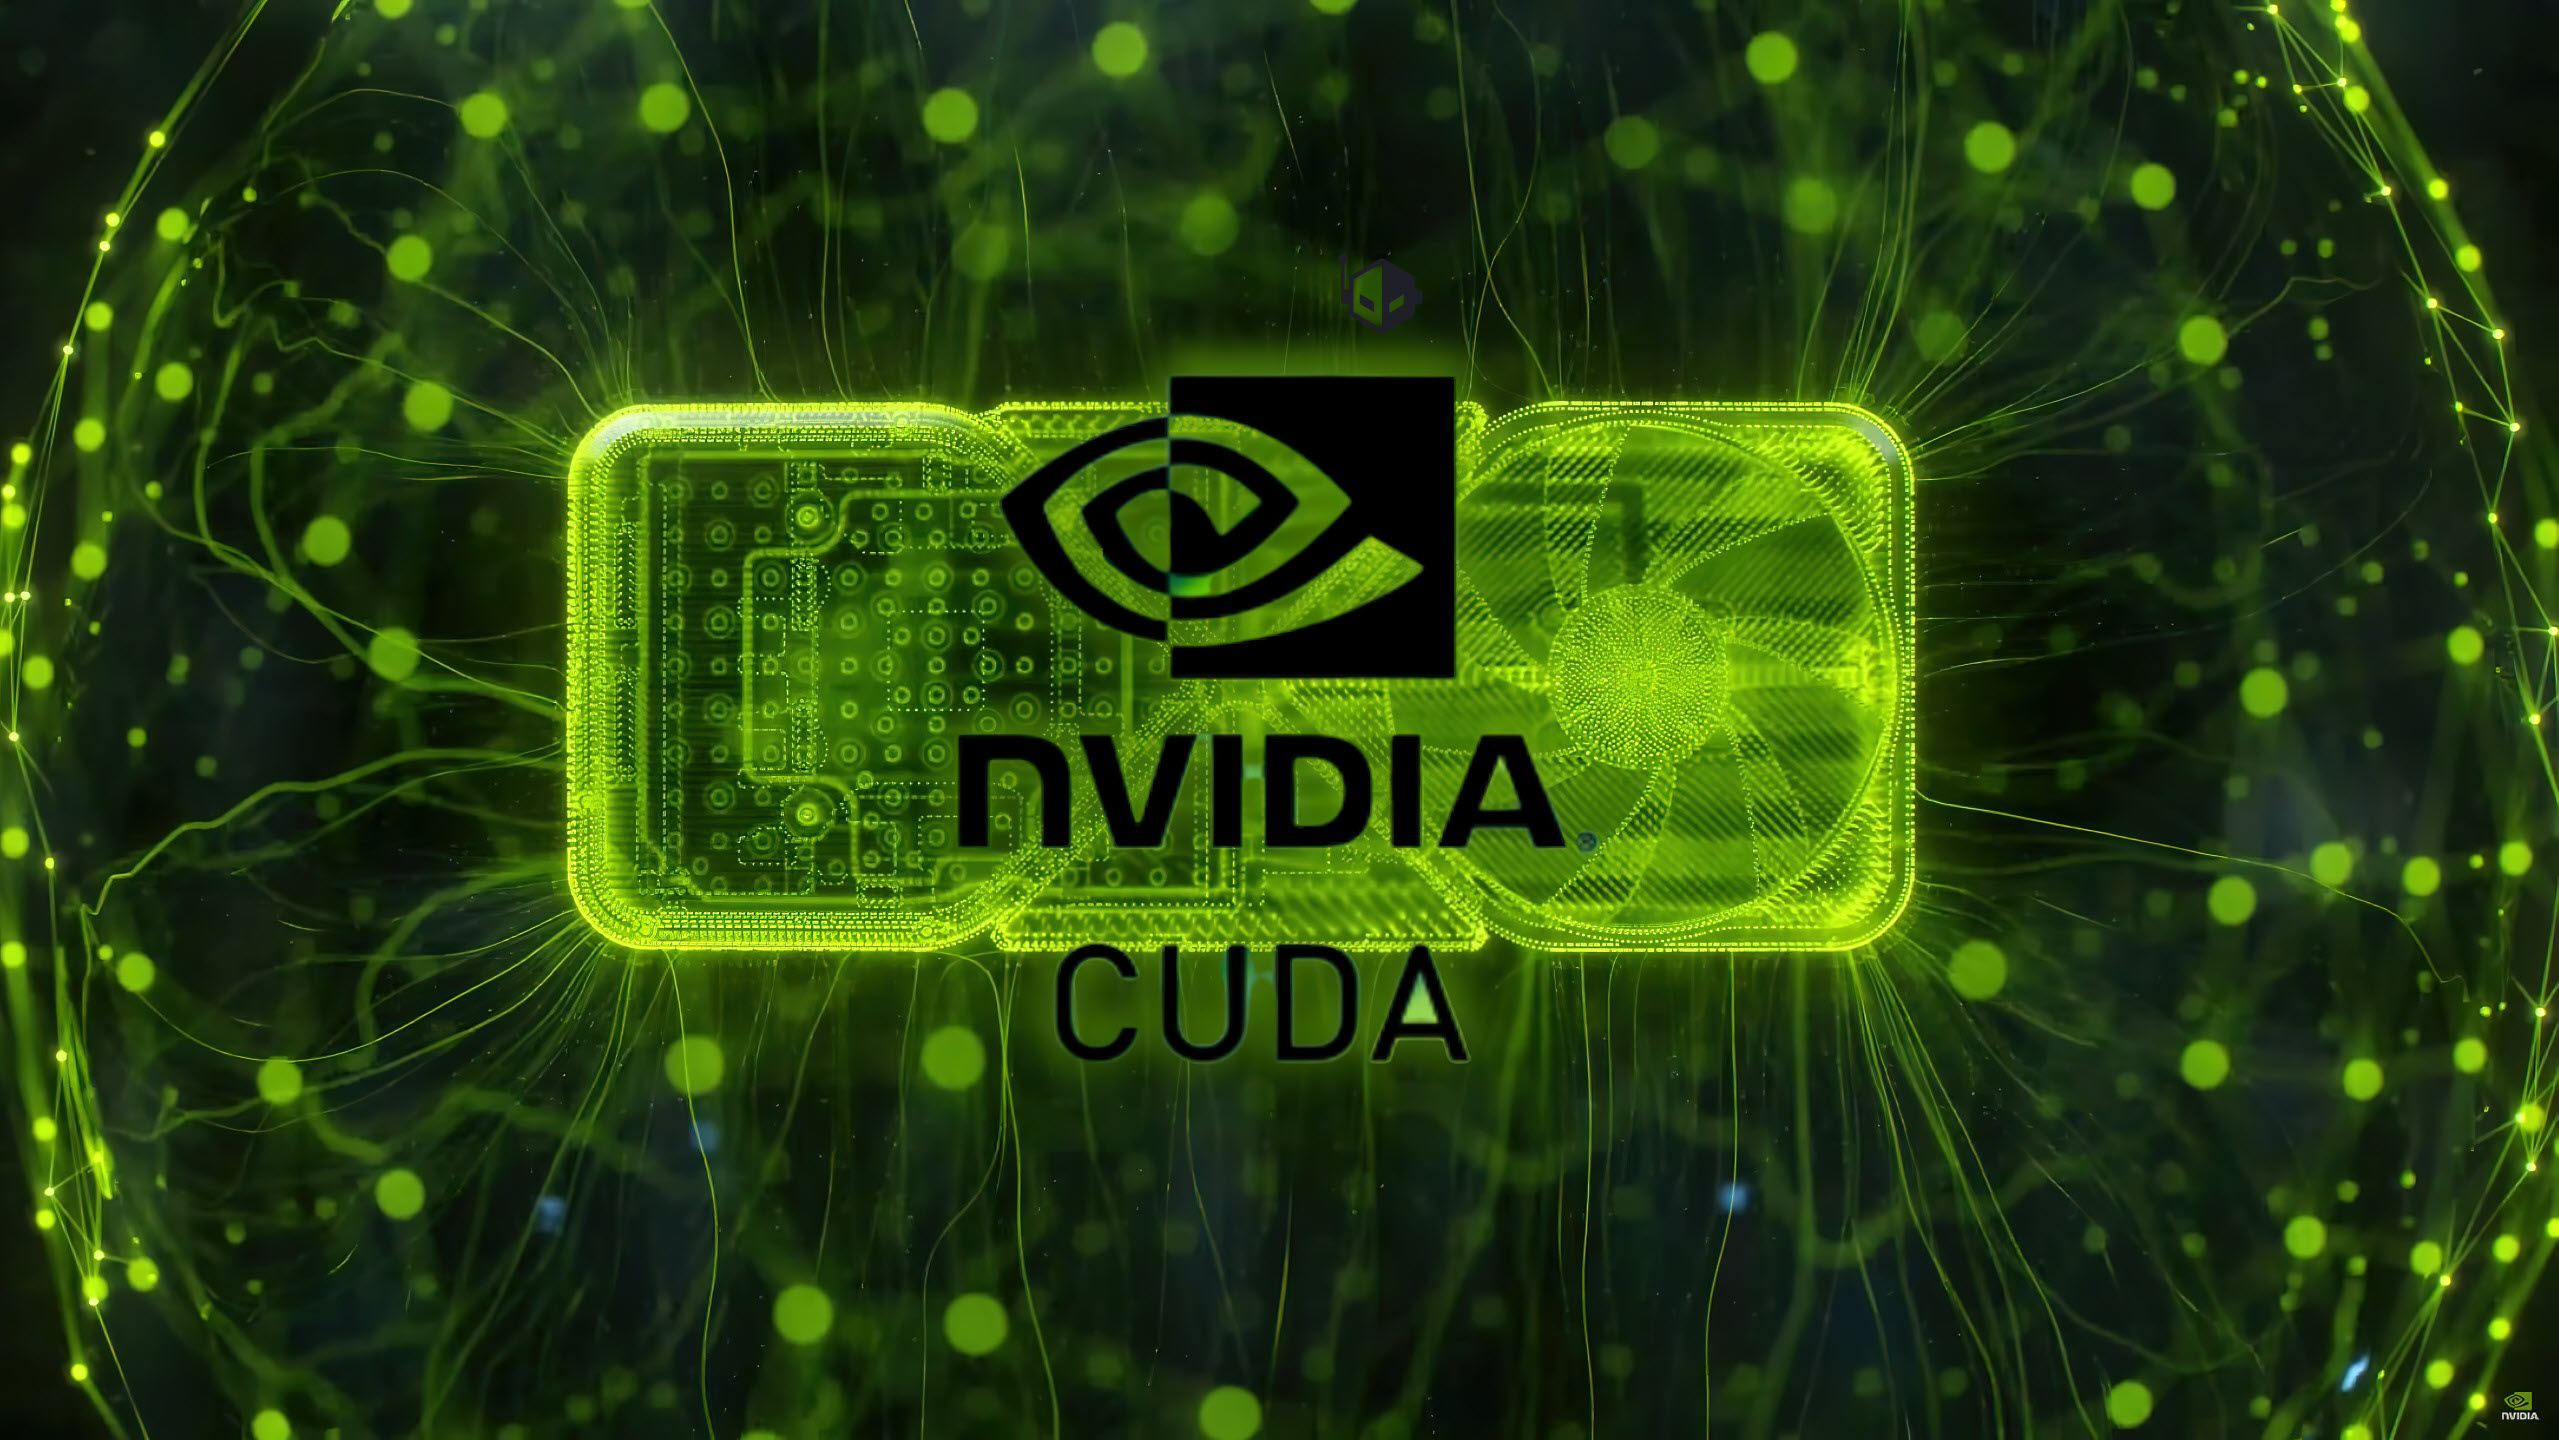 NVIDIA CUDA اکنون می تواند مستقیماً روی پردازنده های گرافیکی AMD با استفاده از جعبه ابزار SCALE اجرا شود.